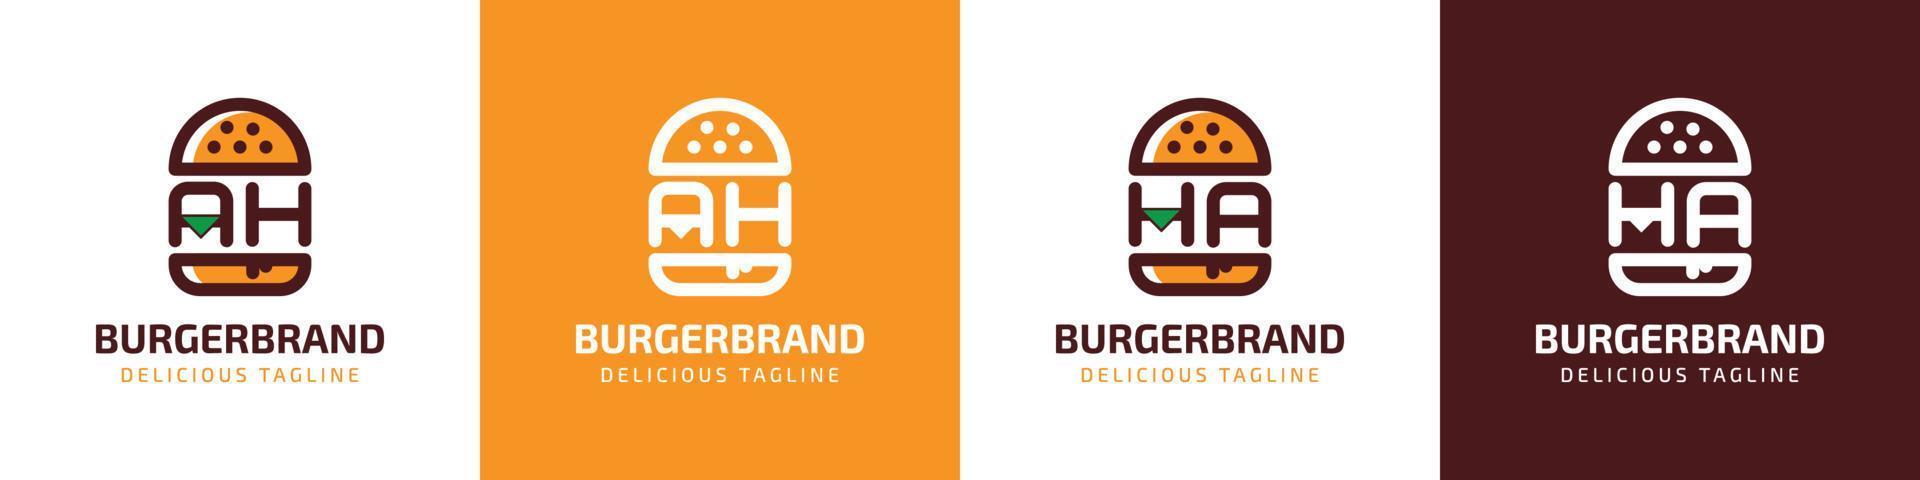 buchstabe ah und ha burger logo, geeignet für jedes geschäft im zusammenhang mit burger mit ah oder ha initialen. vektor